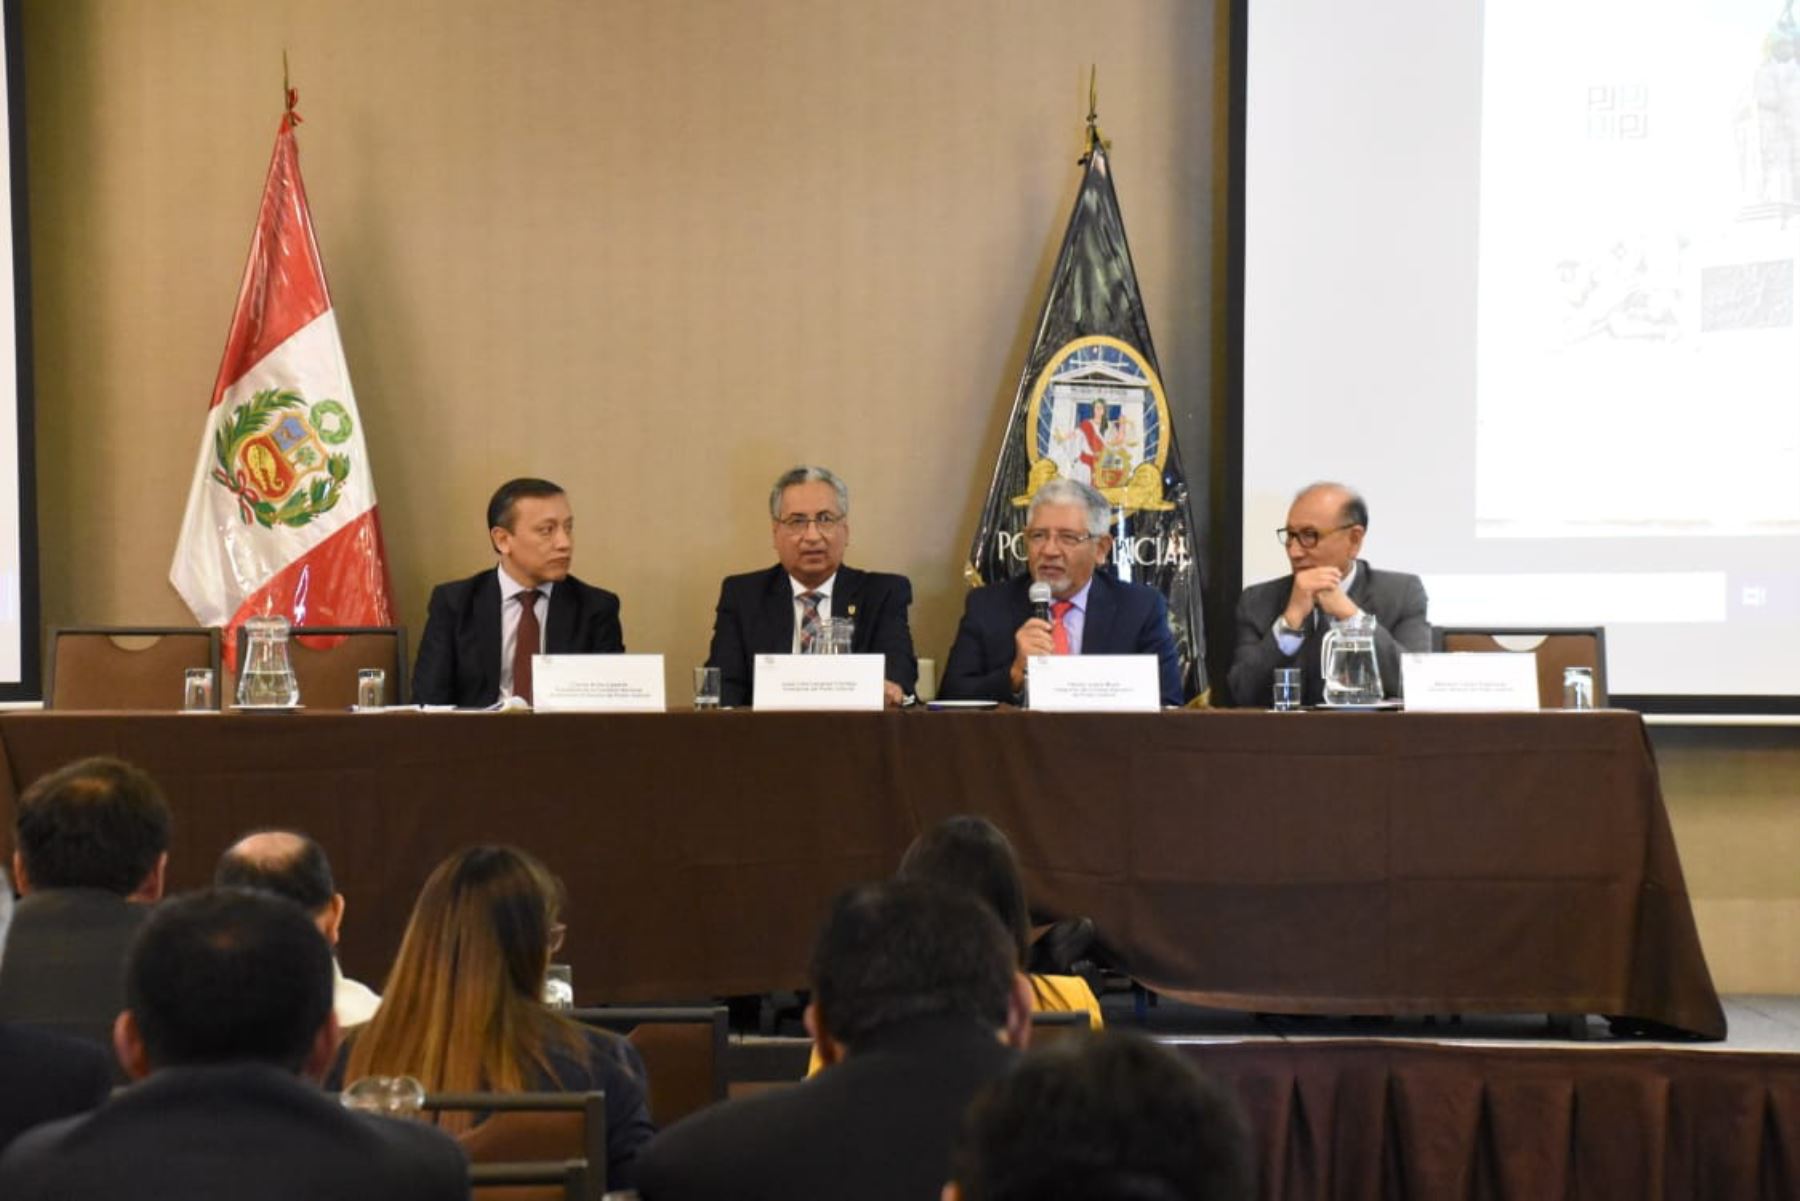 Primera Reunión Anual 2020 de Presidentes de las Cortes de Justicia del Perú, que se realiza en Trujillo.